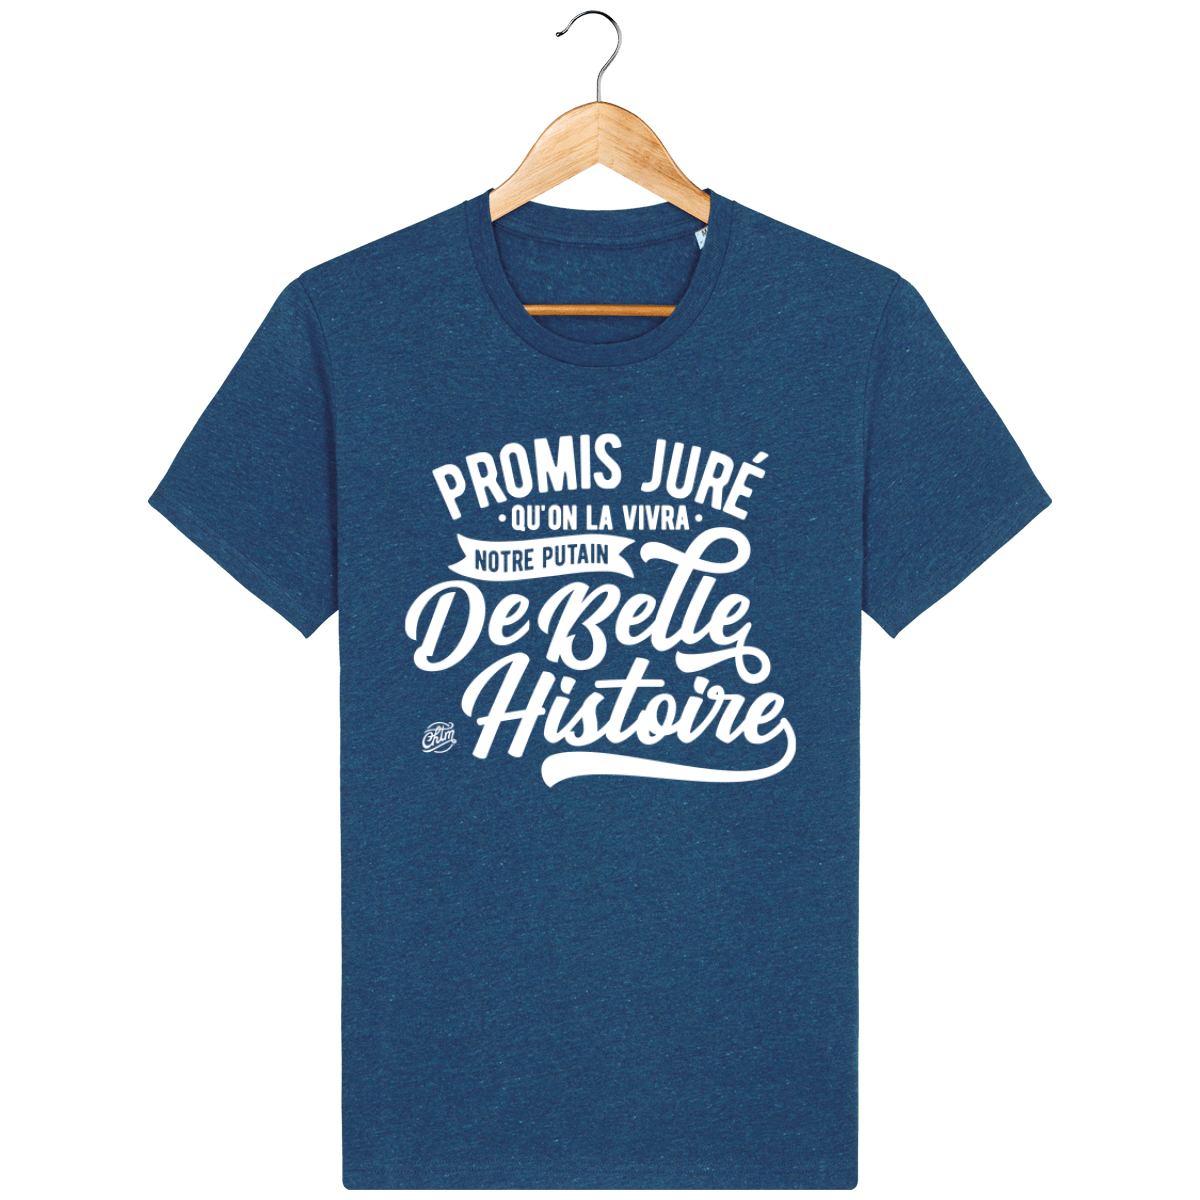 T-shirt - PROMIS JURÉ